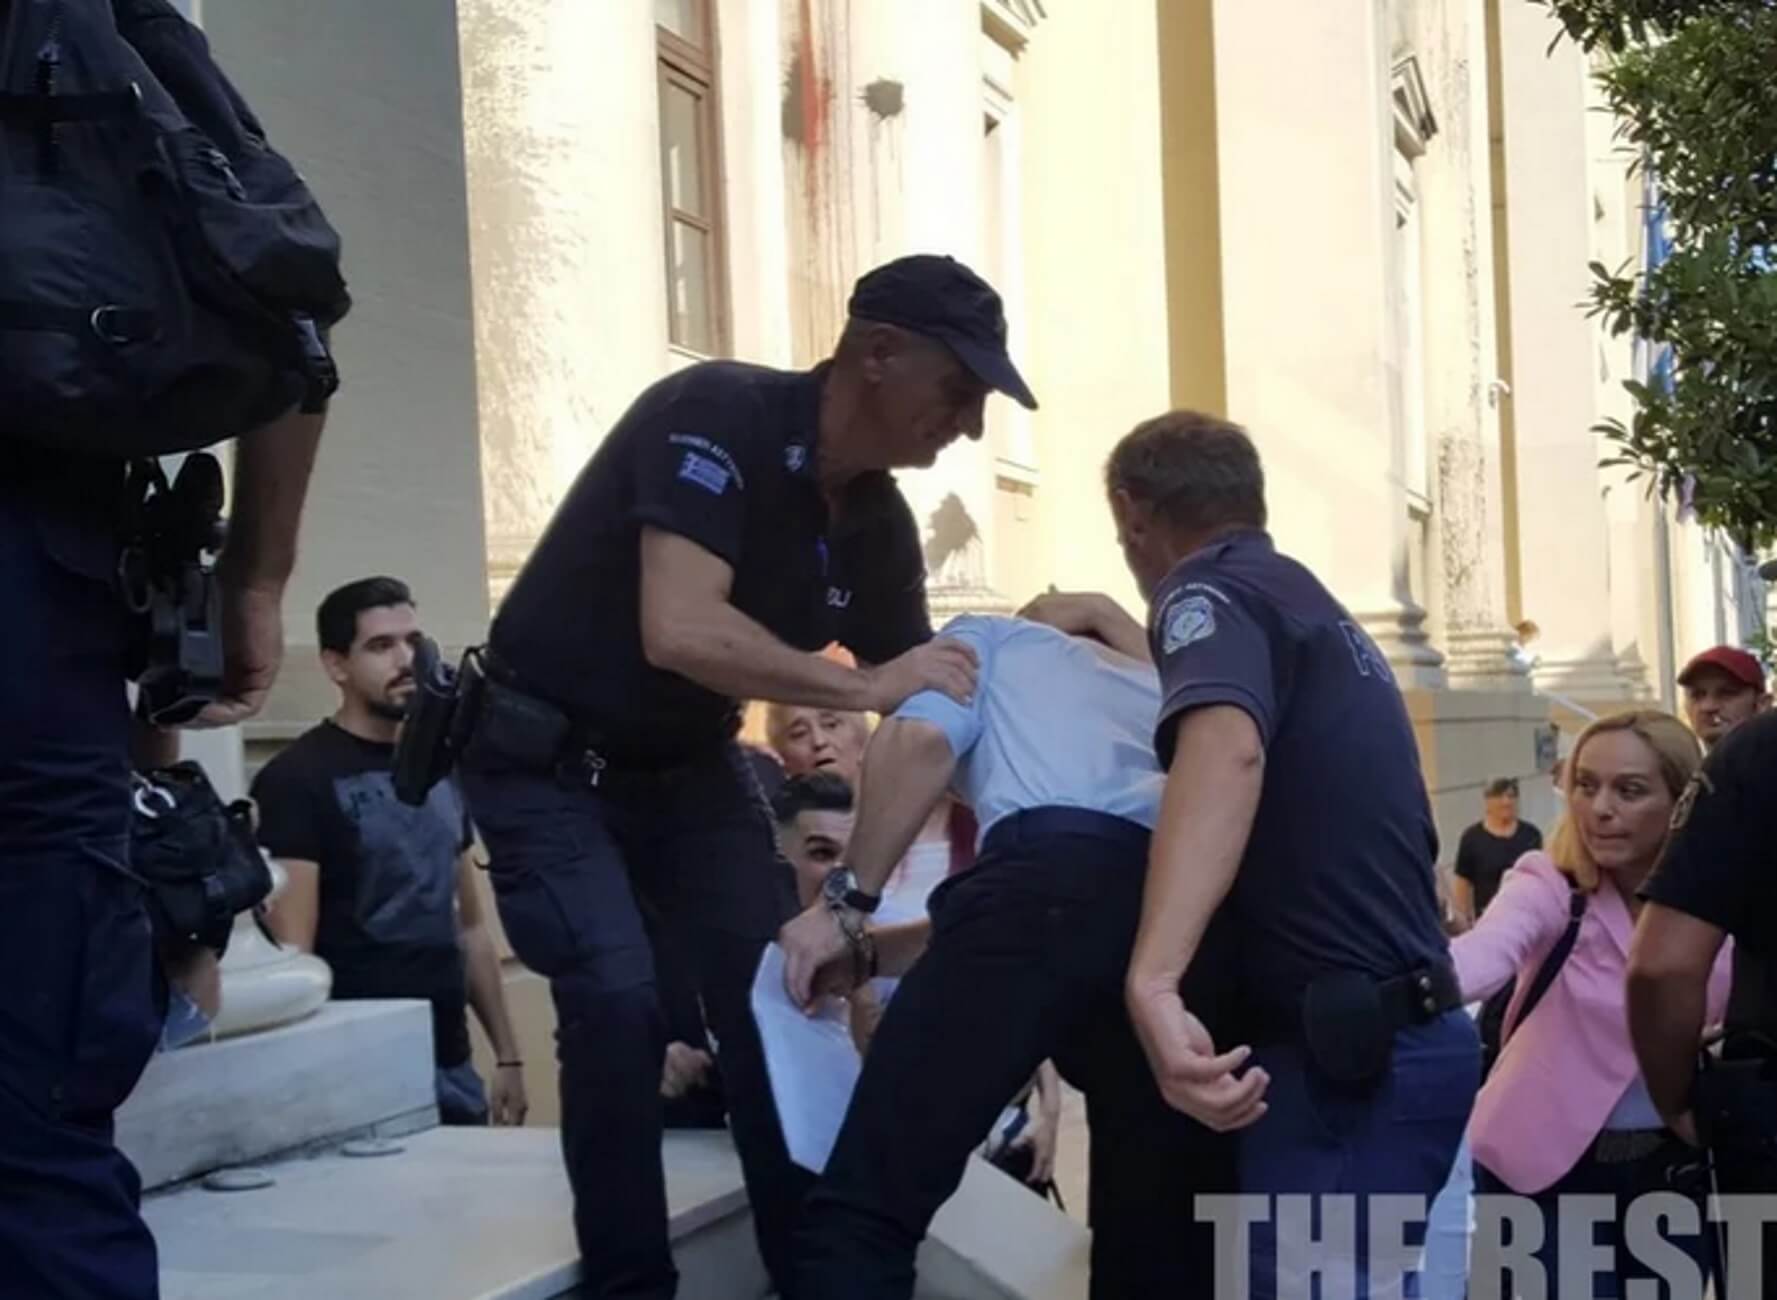 Ζάκυνθος: “Σκότωσα τον πατέρα μου από αγανάκτηση” – Αποθεώθηκε ξανά στα δικαστήρια ο νεαρός πατροκτόνος – video